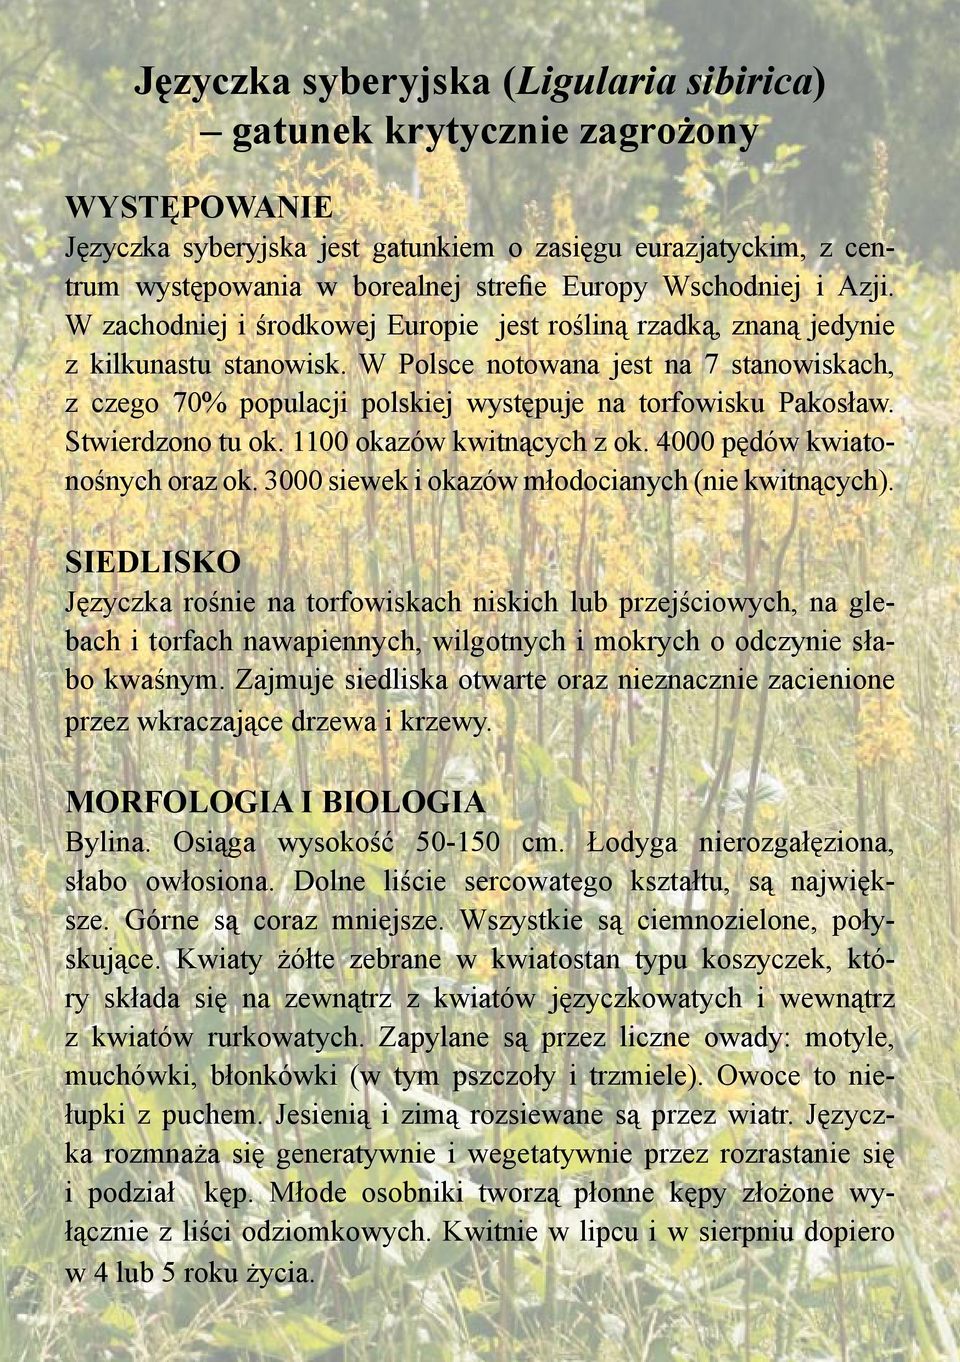 W Polsce notowana jest na 7 stanowiskach, z czego 70% populacji polskiej występuje na torfowisku Pakosław. Stwierdzono tu ok. 1100 okazów kwitnących z ok. 4000 pędów kwiatonośnych oraz ok.